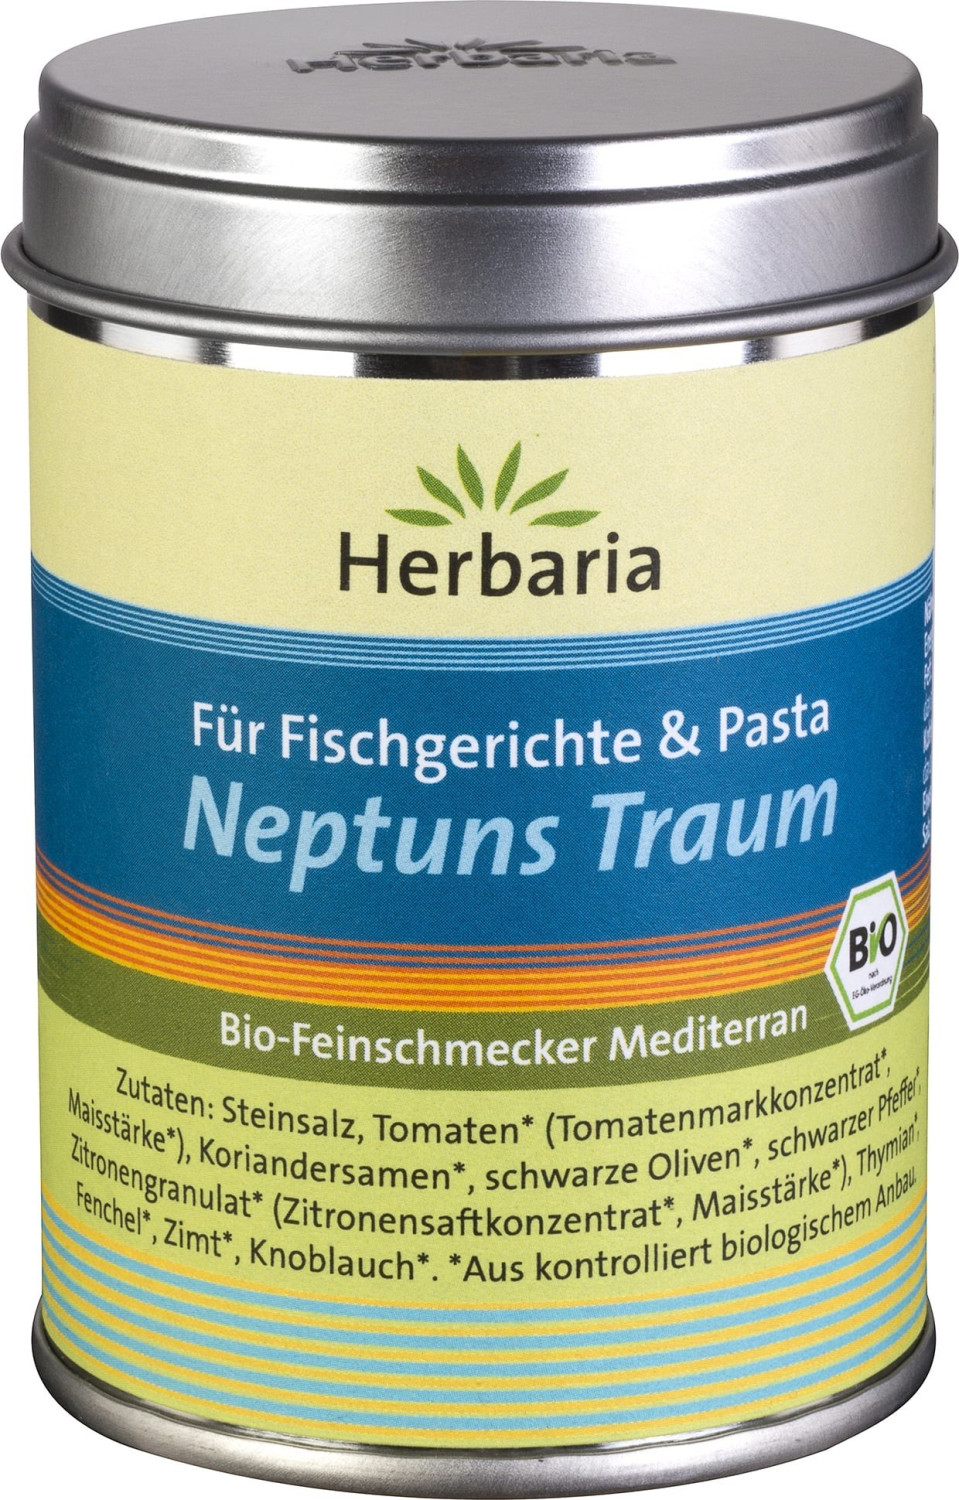 Herbaria Neptuns Traum Fischgewürz (100g) ab 5,94 € | Preisvergleich ...